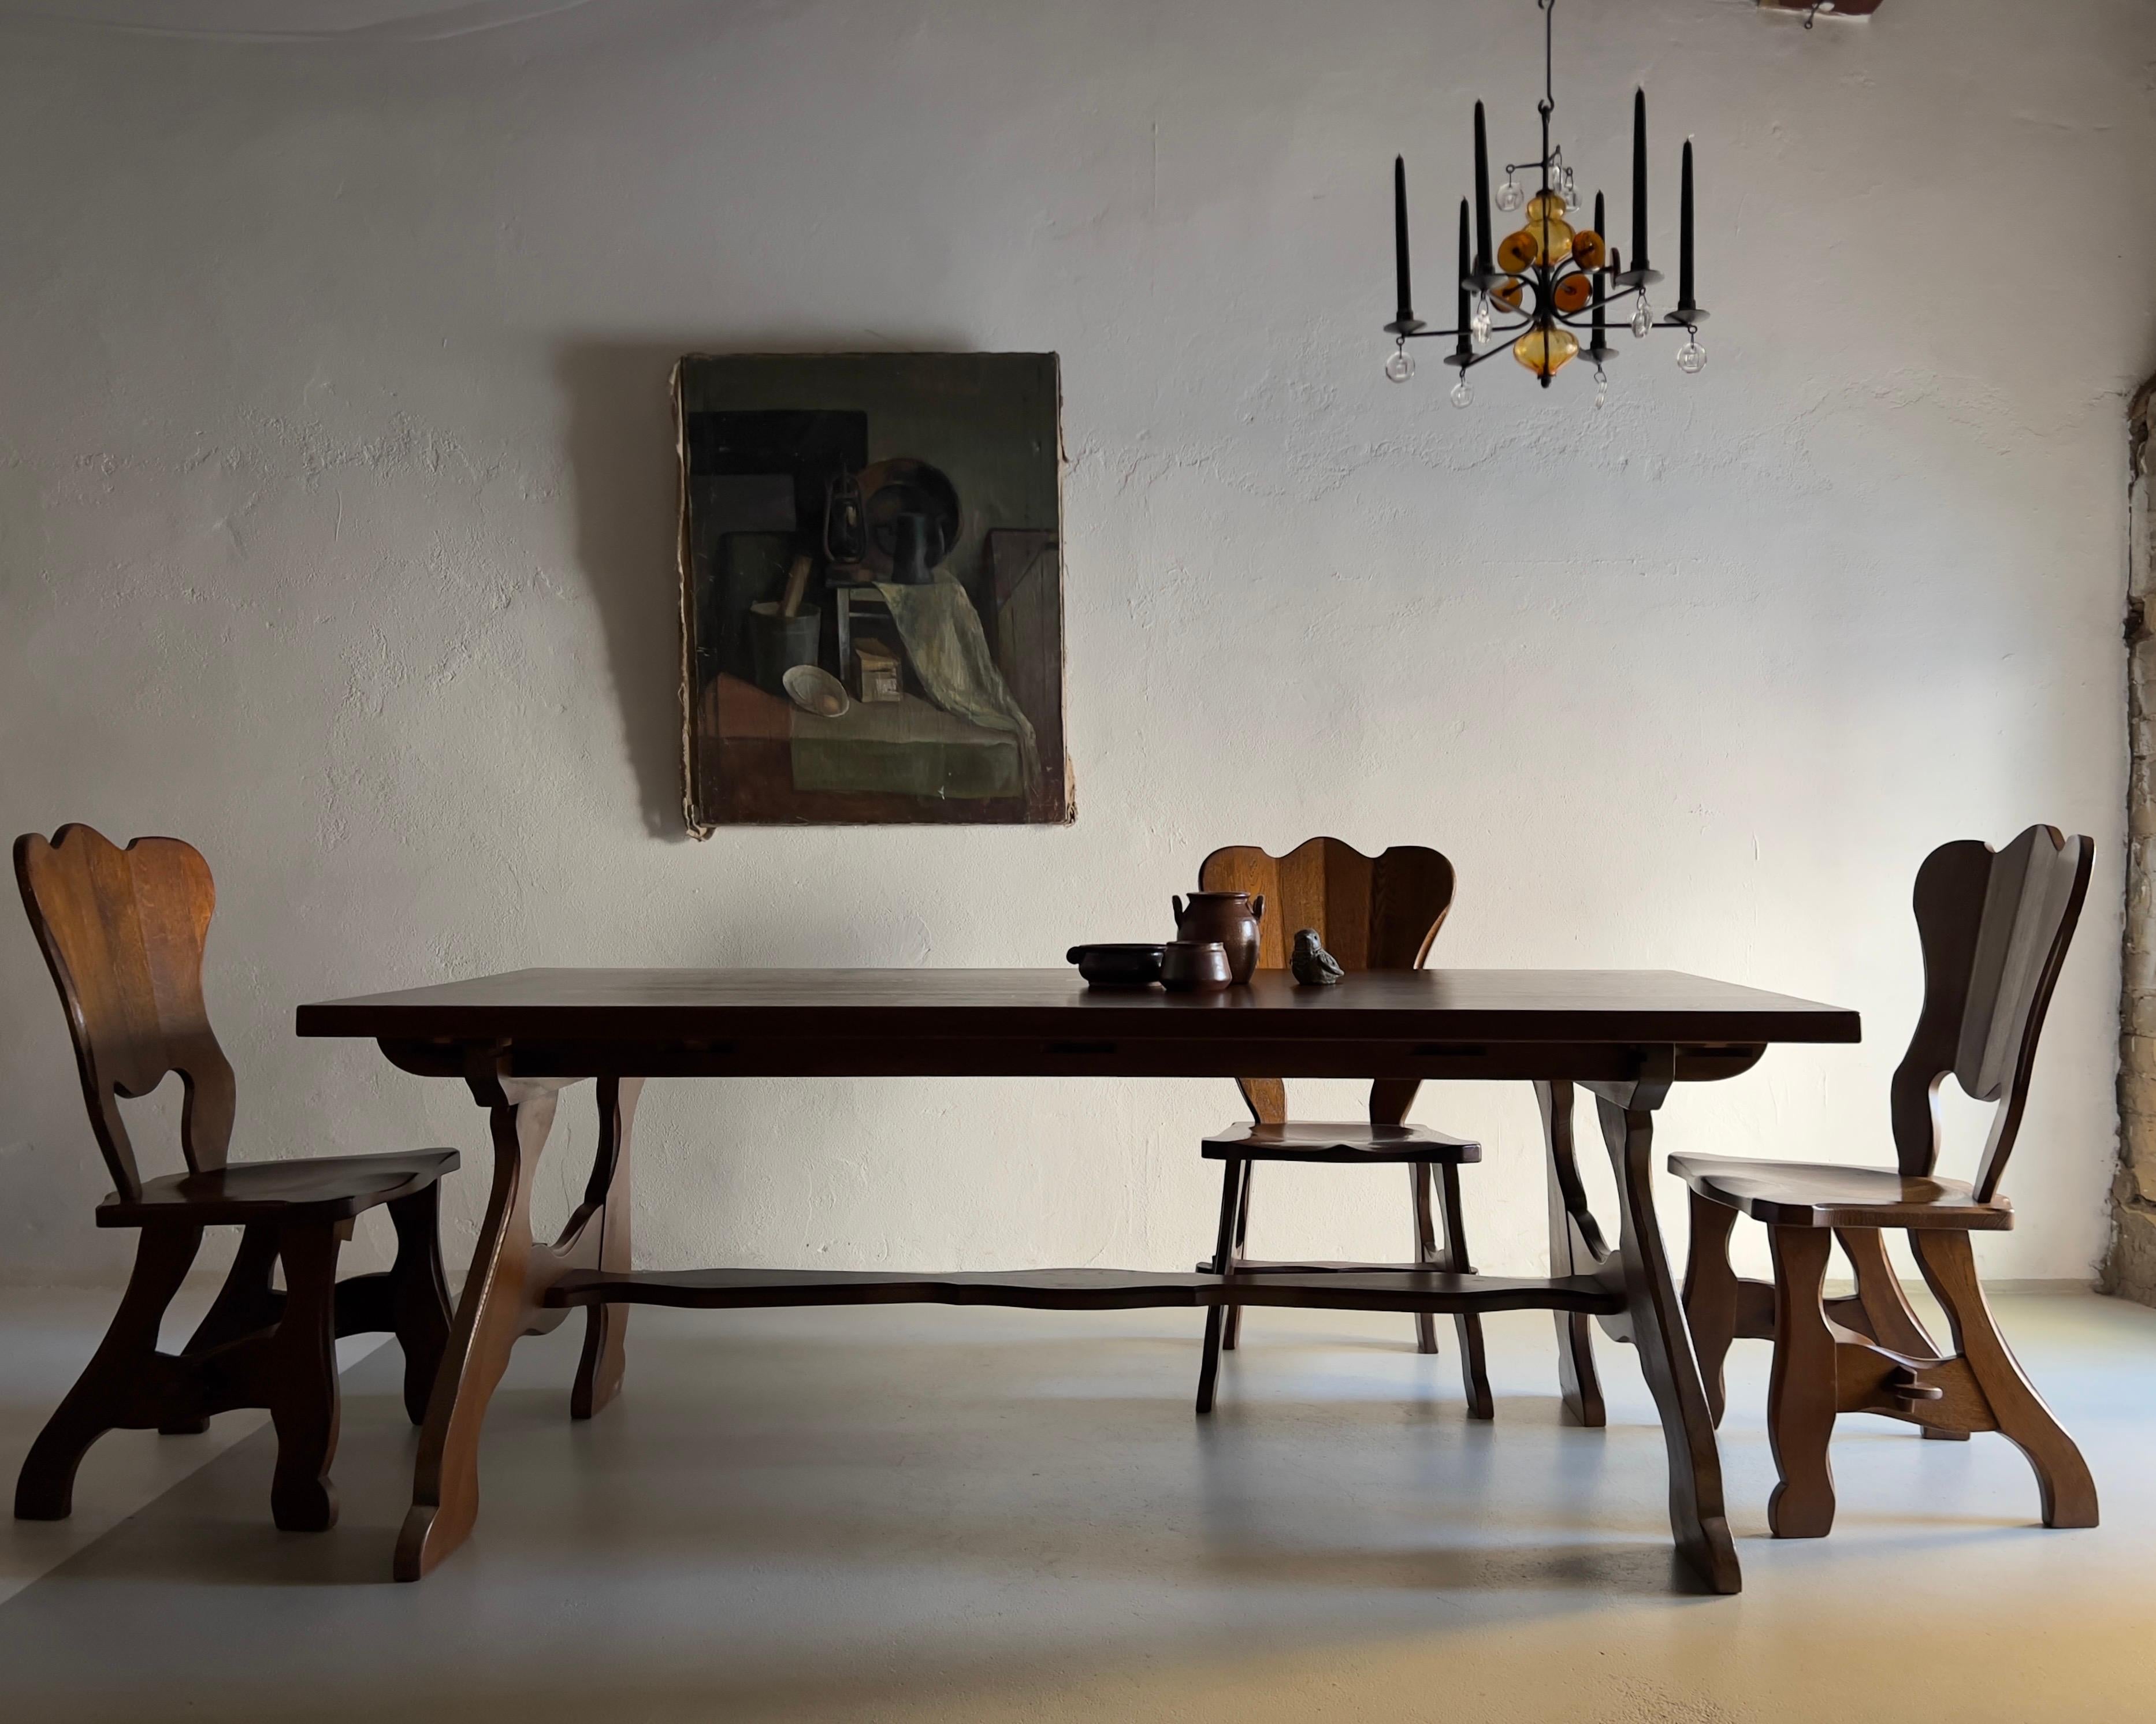 Table de salle à manger en chêne massif foncé avec un ensemble de six chaises assorties.

Dimensions :
Table (peut être entièrement démontée) : H (table/plateau) 74/4 cm, L 200 cm, P 84 cm
Chaises : H 98 cm, H(assise) 45 cm, L 49 cm, P 49 cm